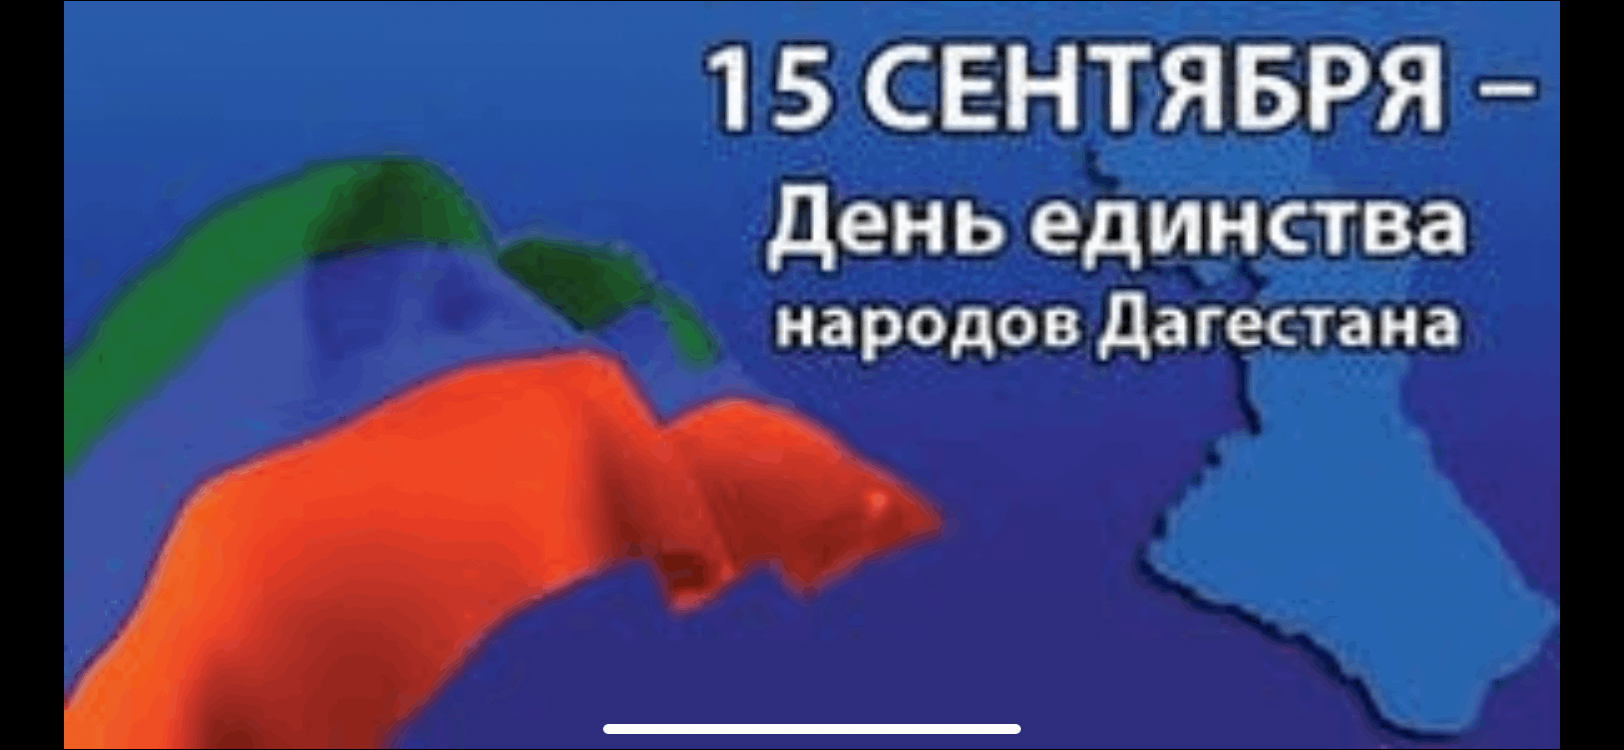 15 Сентября день единства народов Дагестана классный час